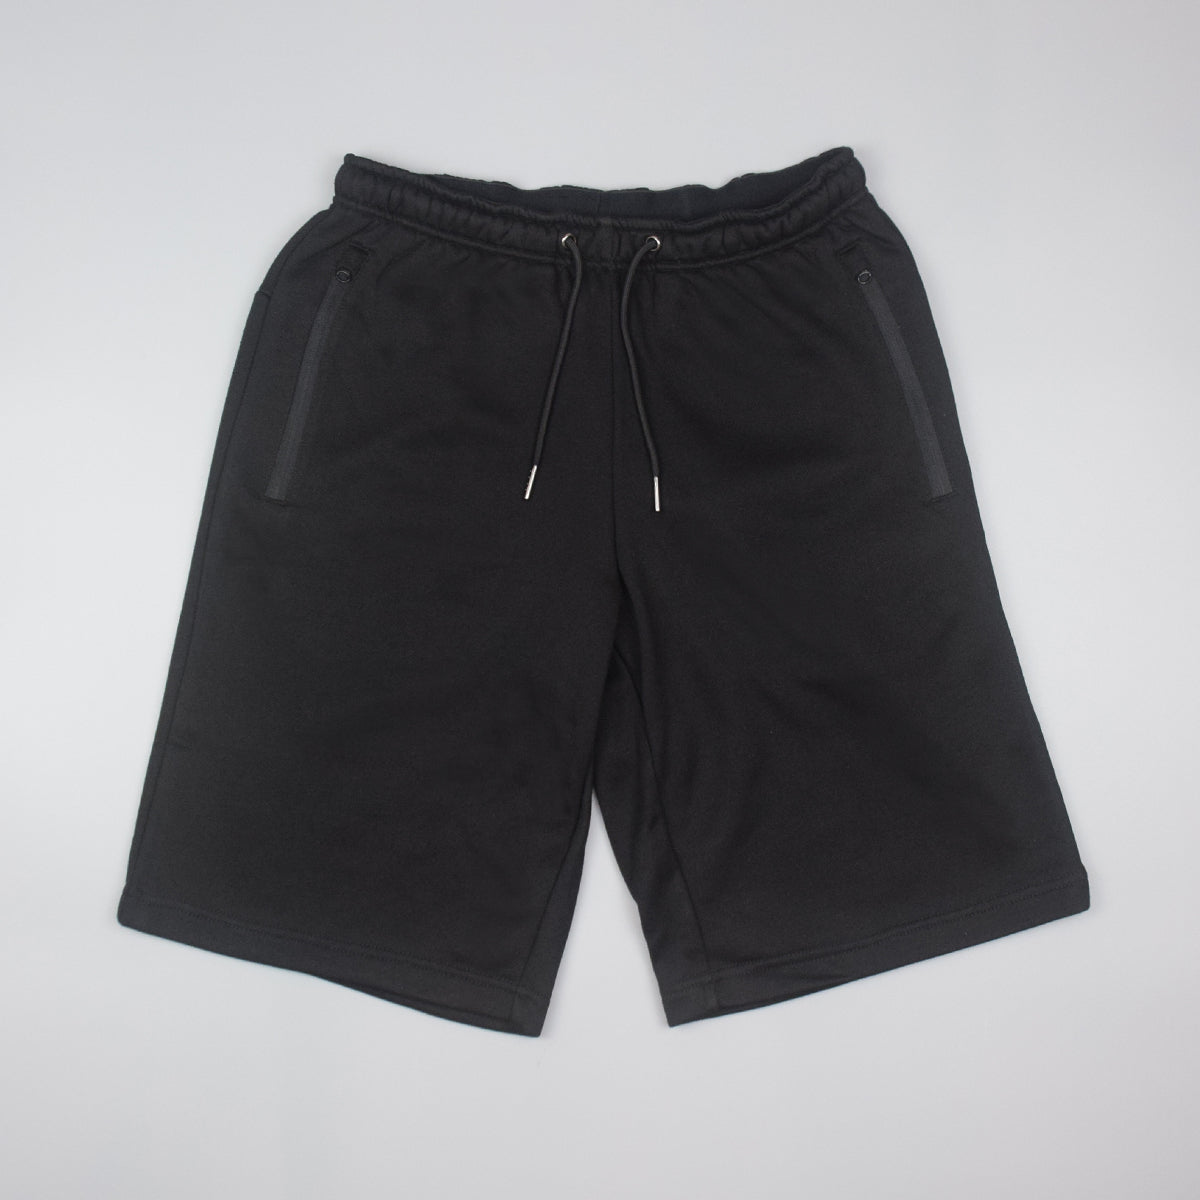 MEN'S TERRY BASIC SHORTS 男裝短褲 (SIZE 160/XS-180/XL)